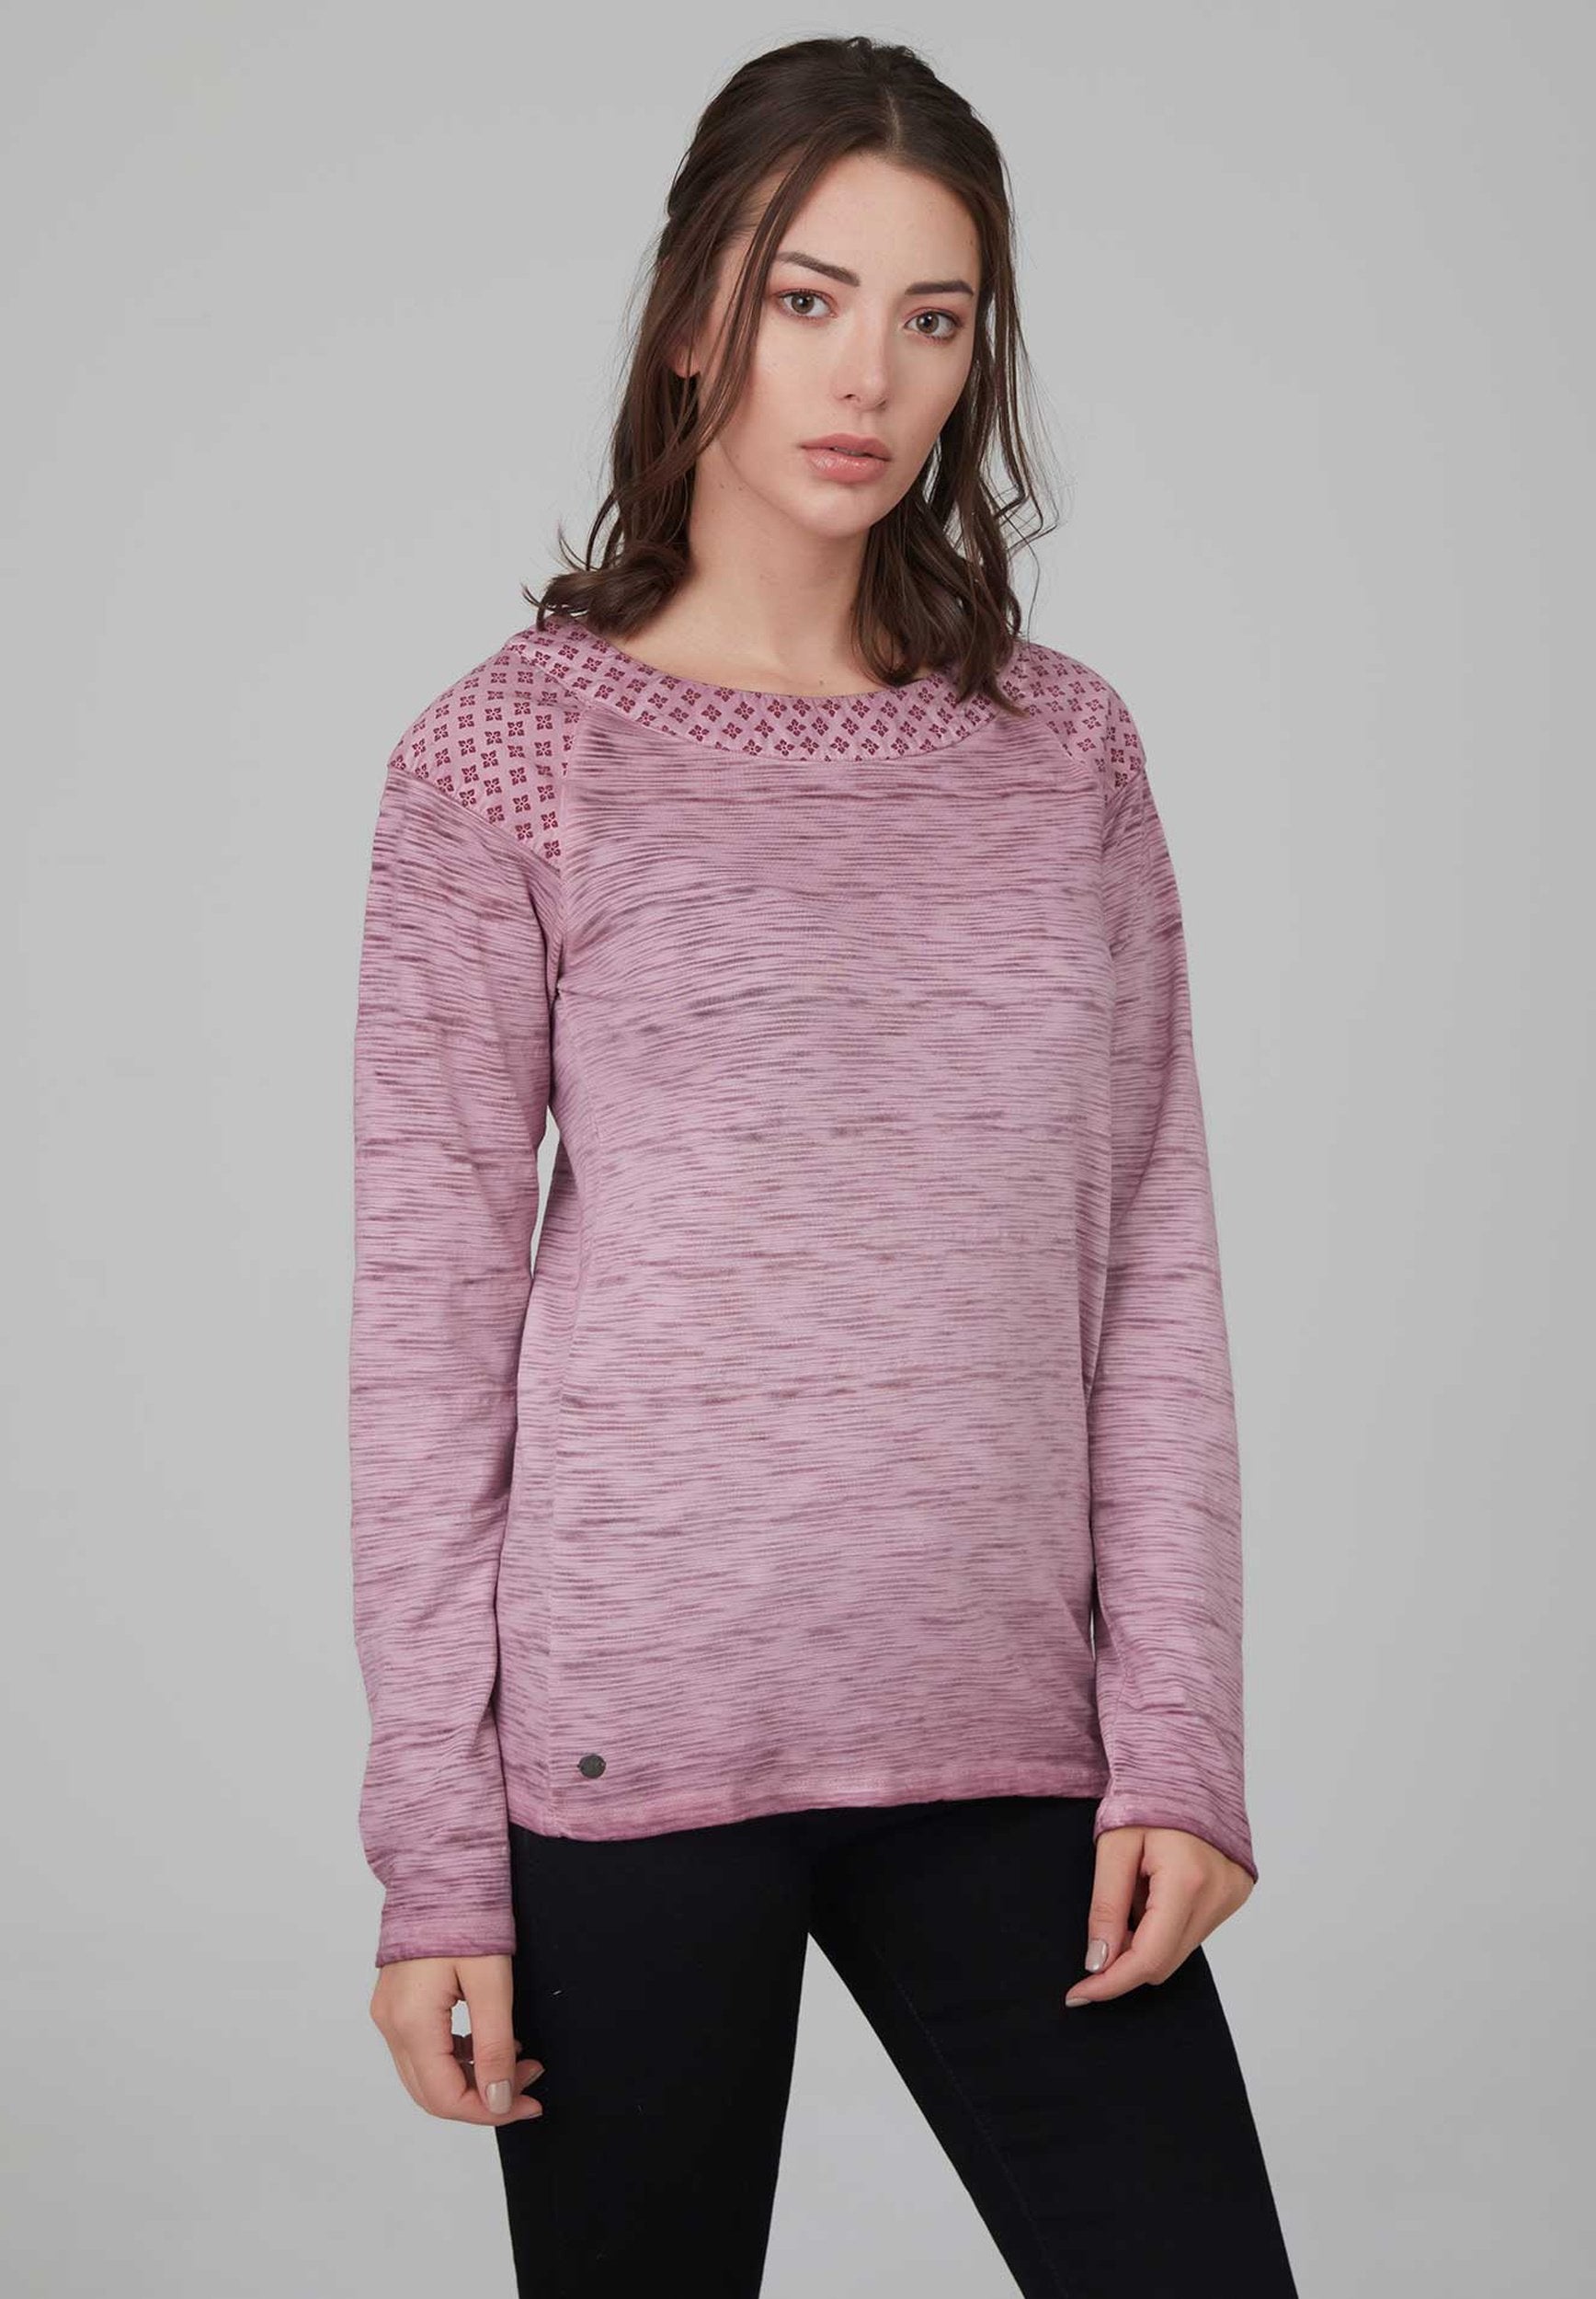 Flammgarnshirt als Basic in trendiger Farbe aus Bio-Baumwolle